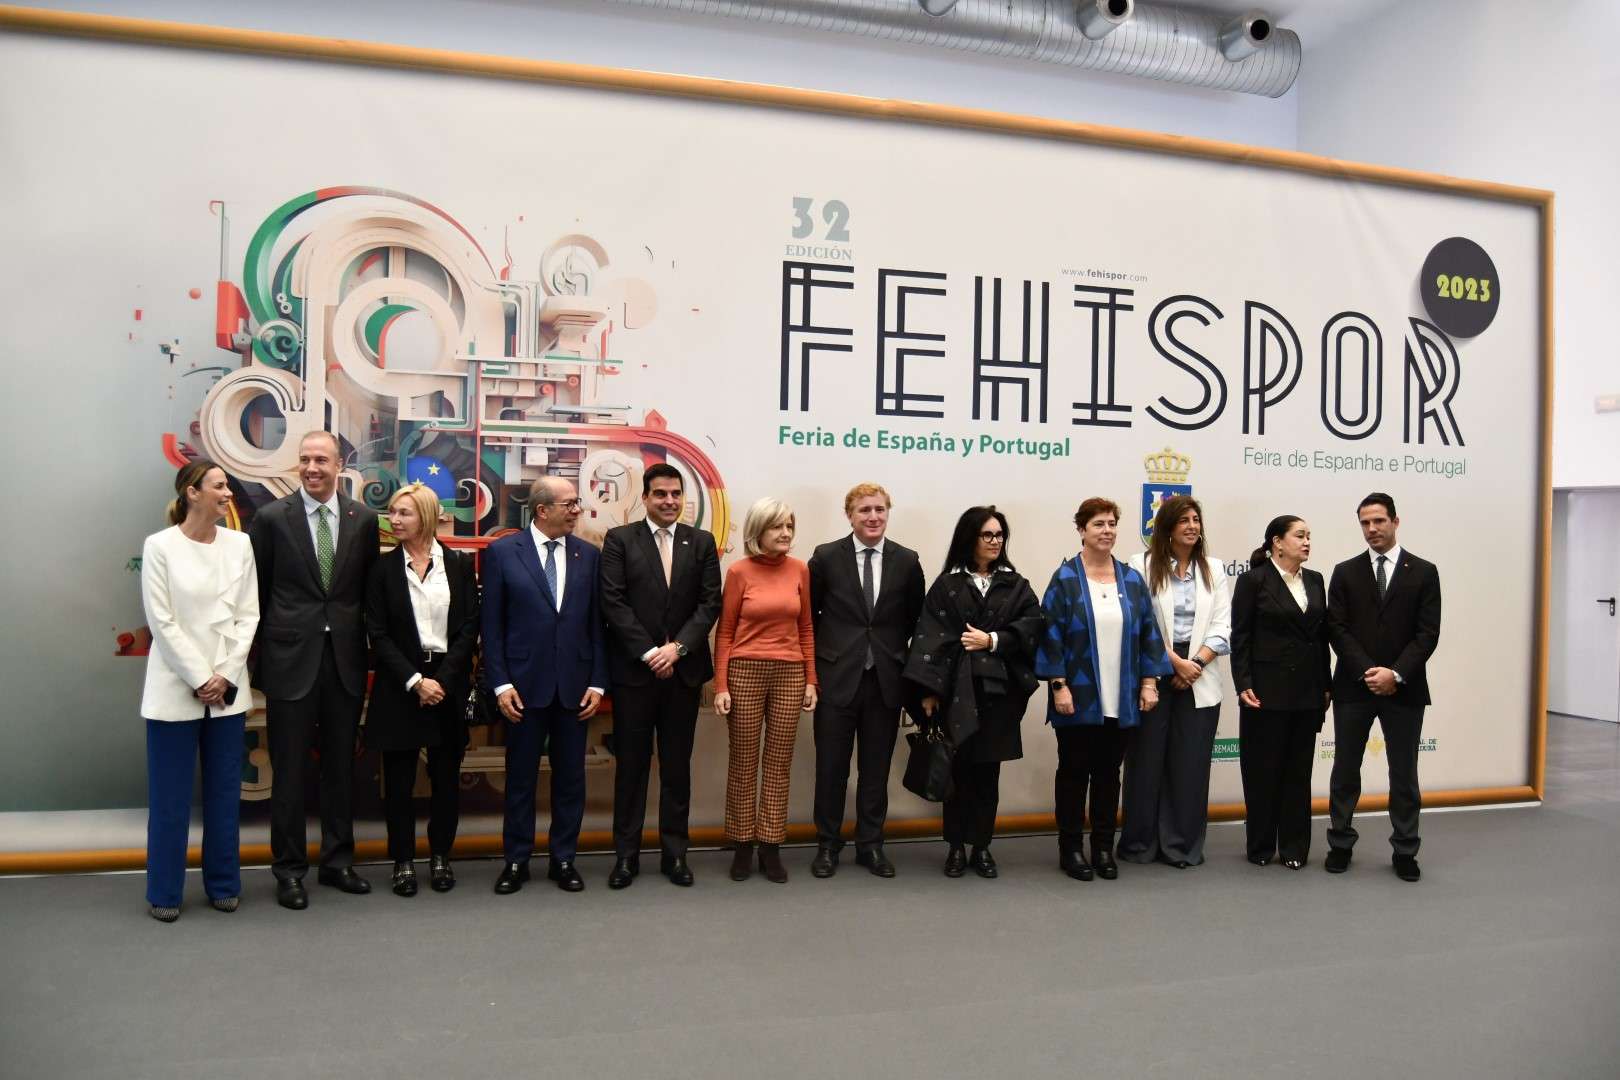 La Feria de España y Portugal (Fehispor) rinde homenaje a la figura de Manuel Rui Nabeiro con una exposición sobre su vida